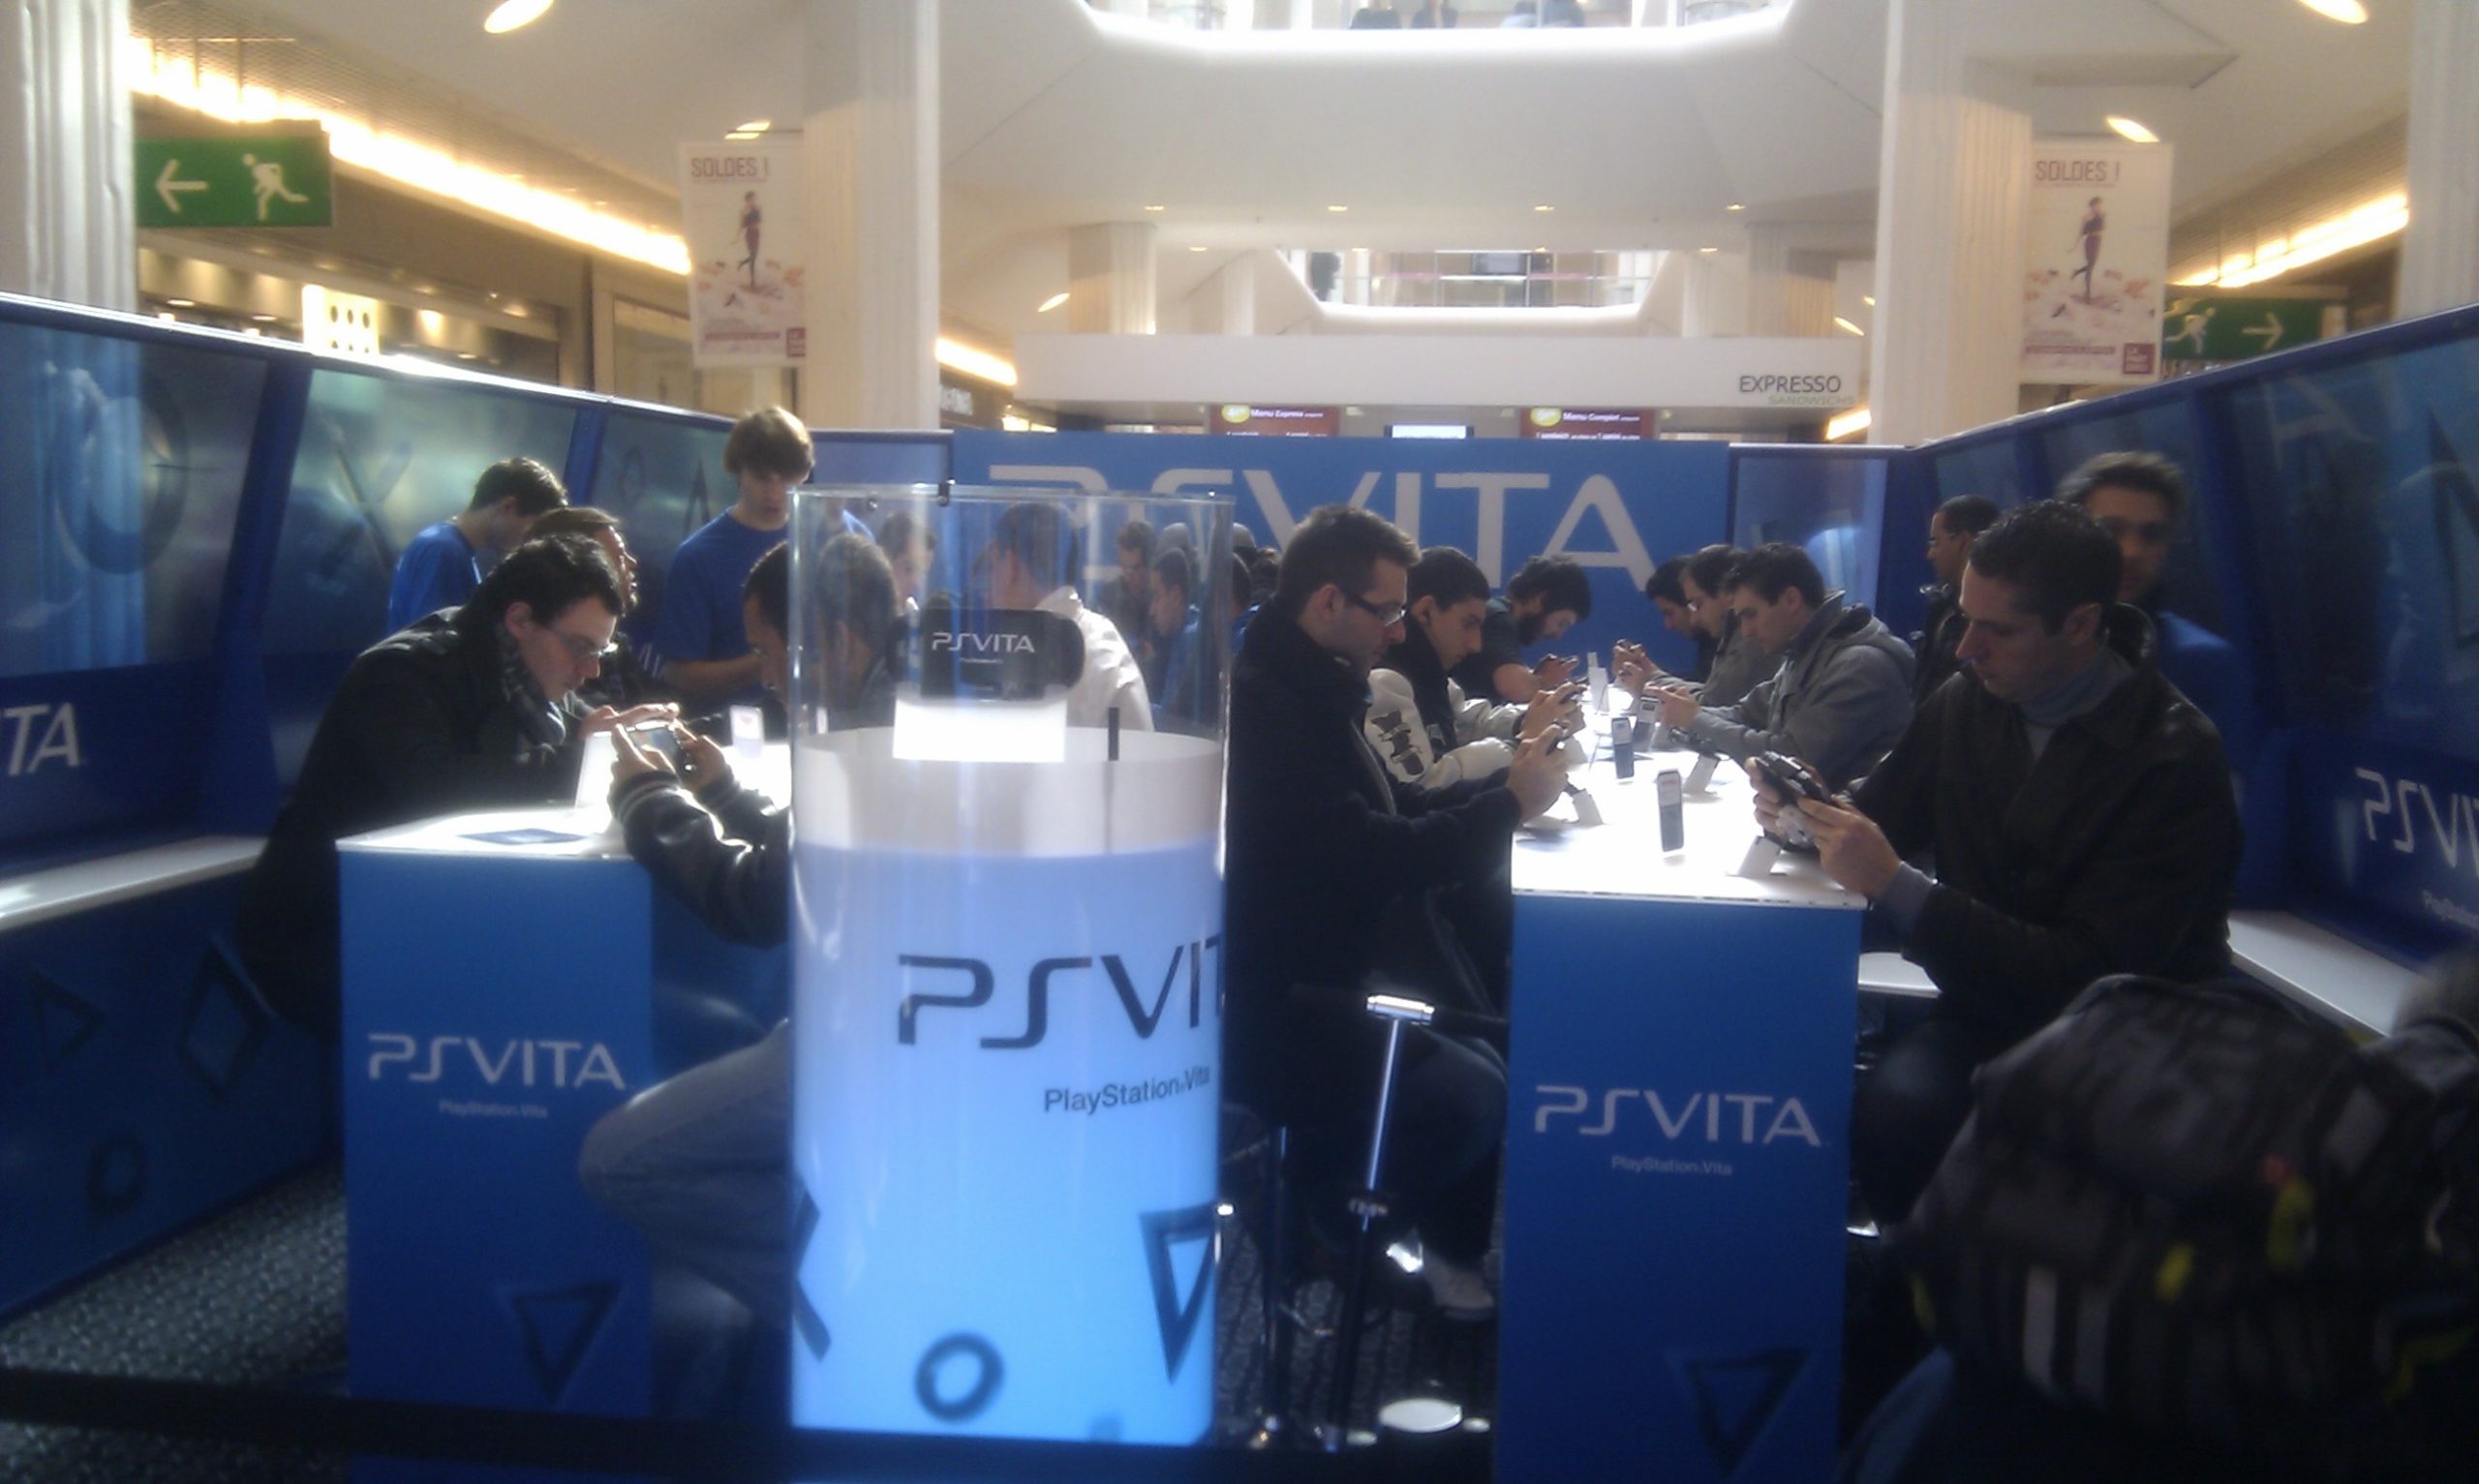 PS Vita in Lyon in 2012